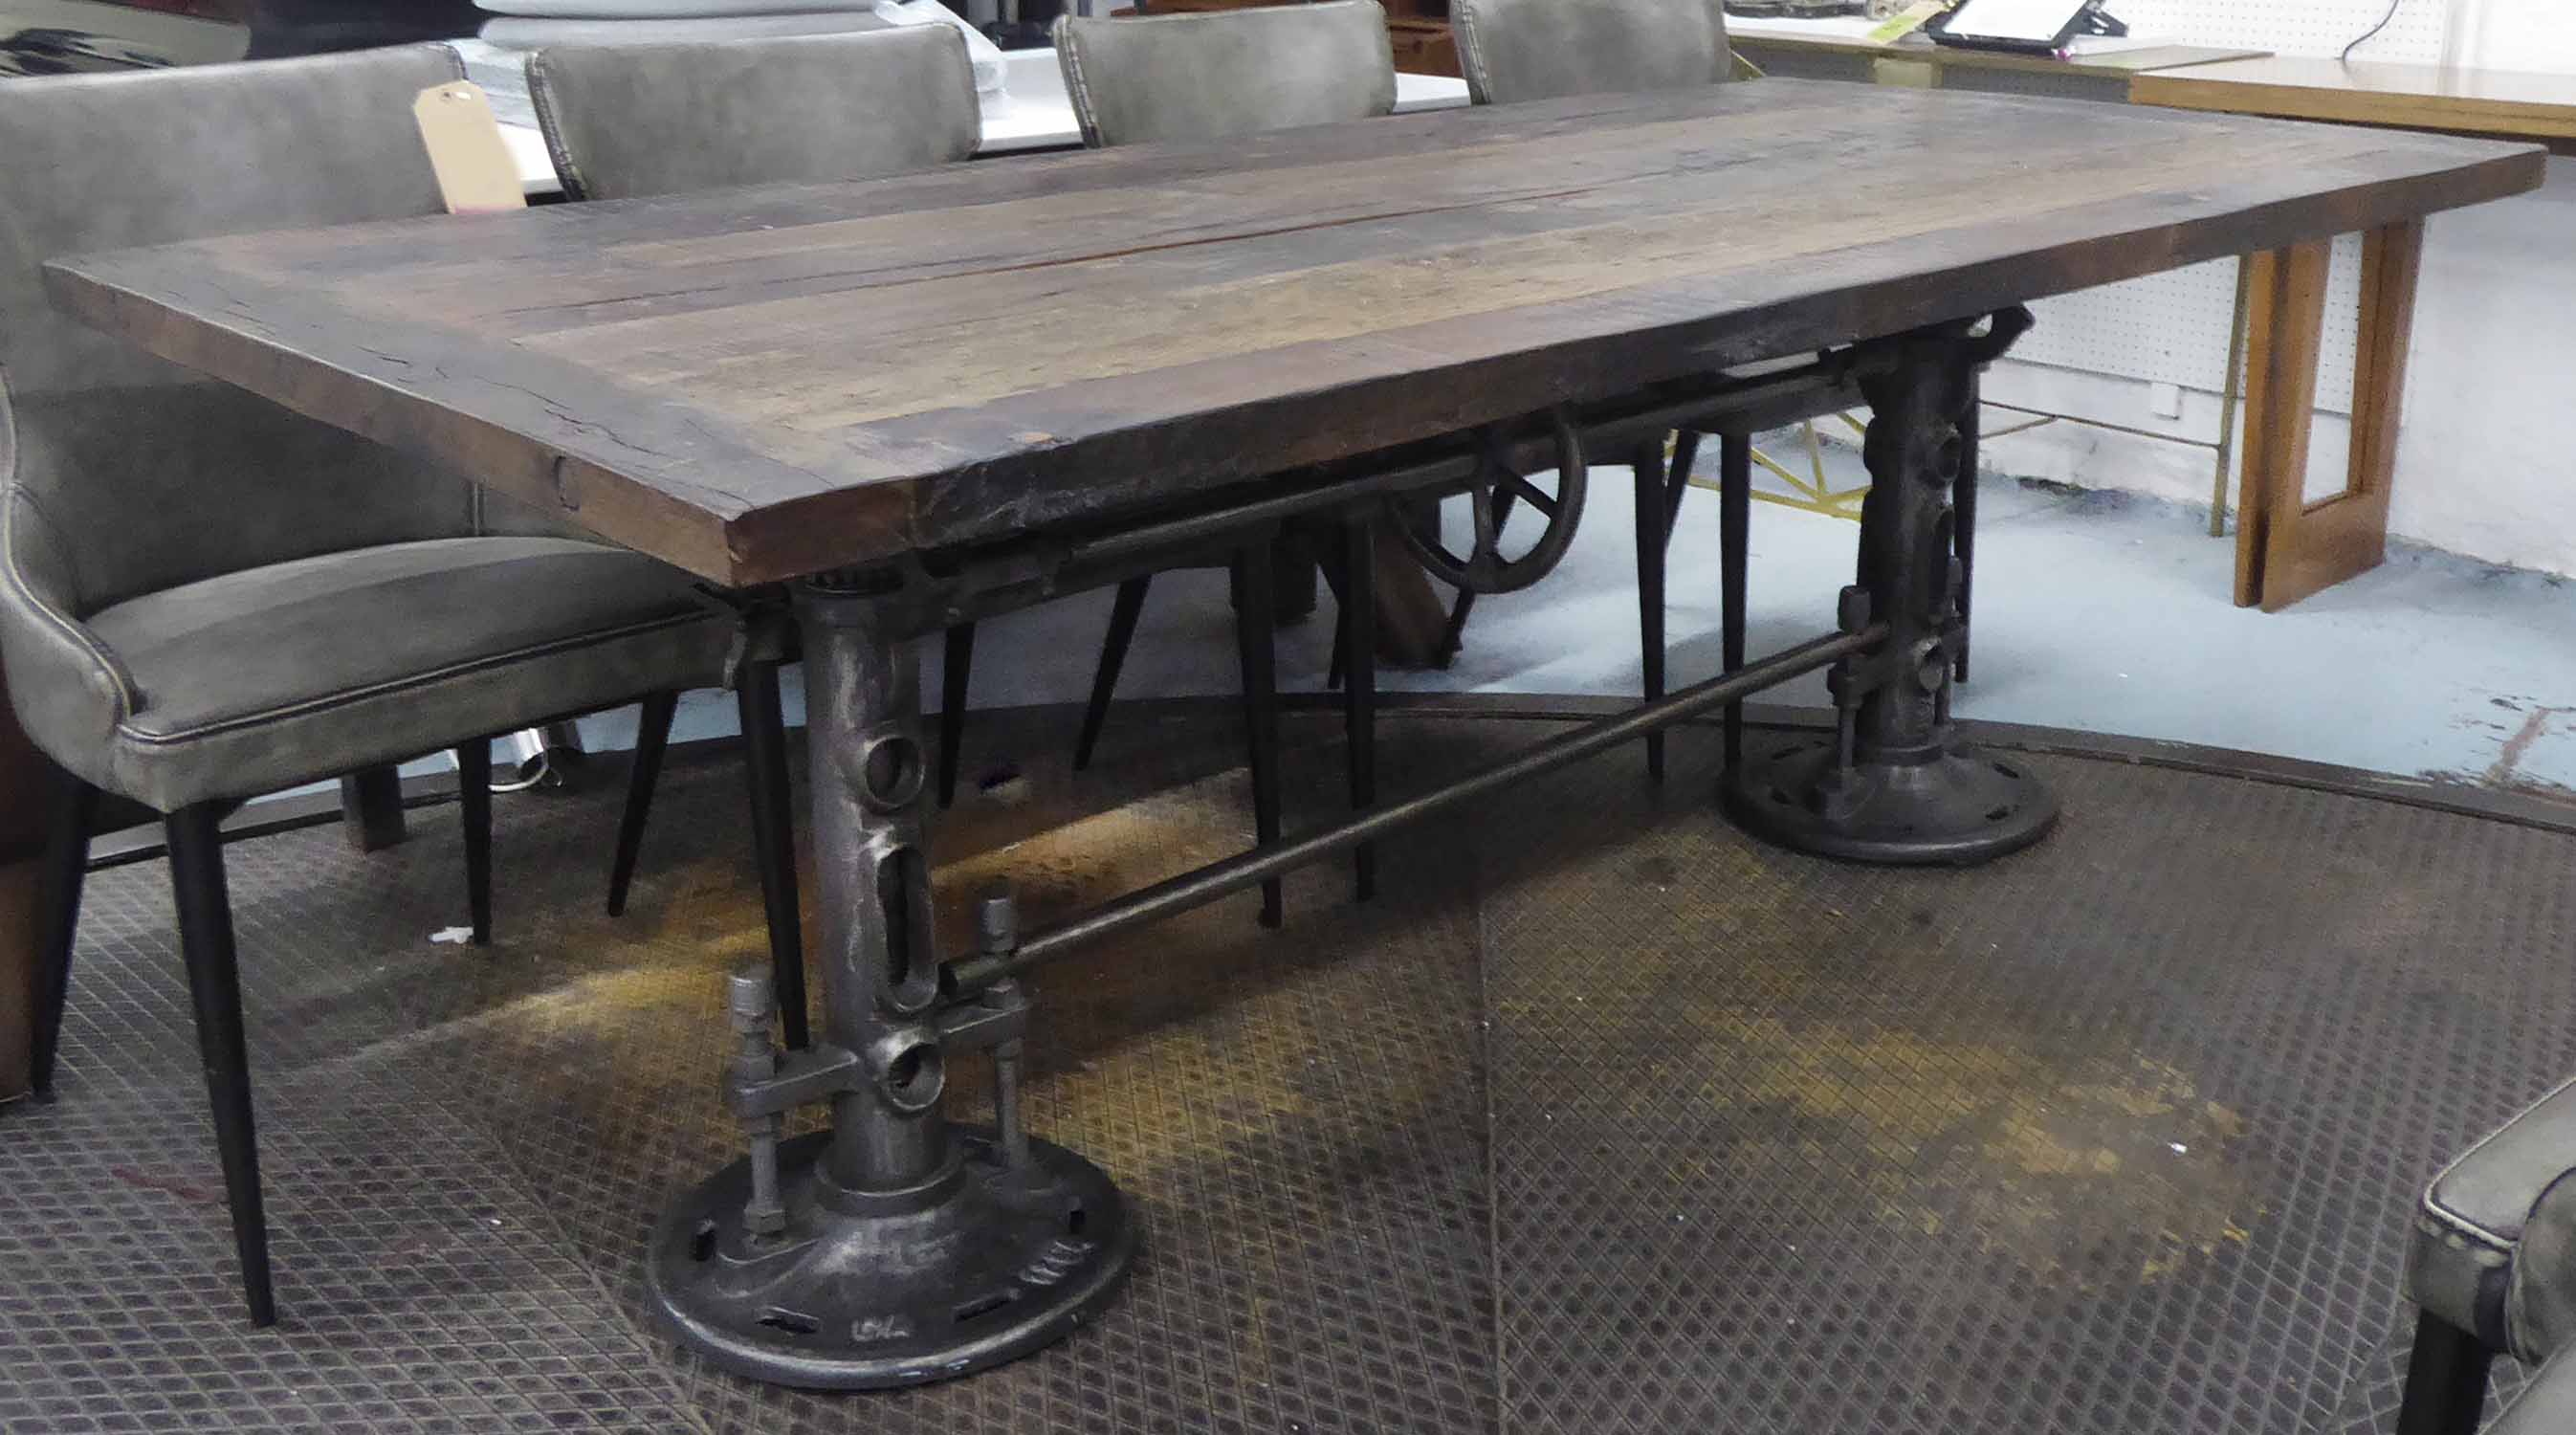 Industrial Looking Dining Room Table Legs